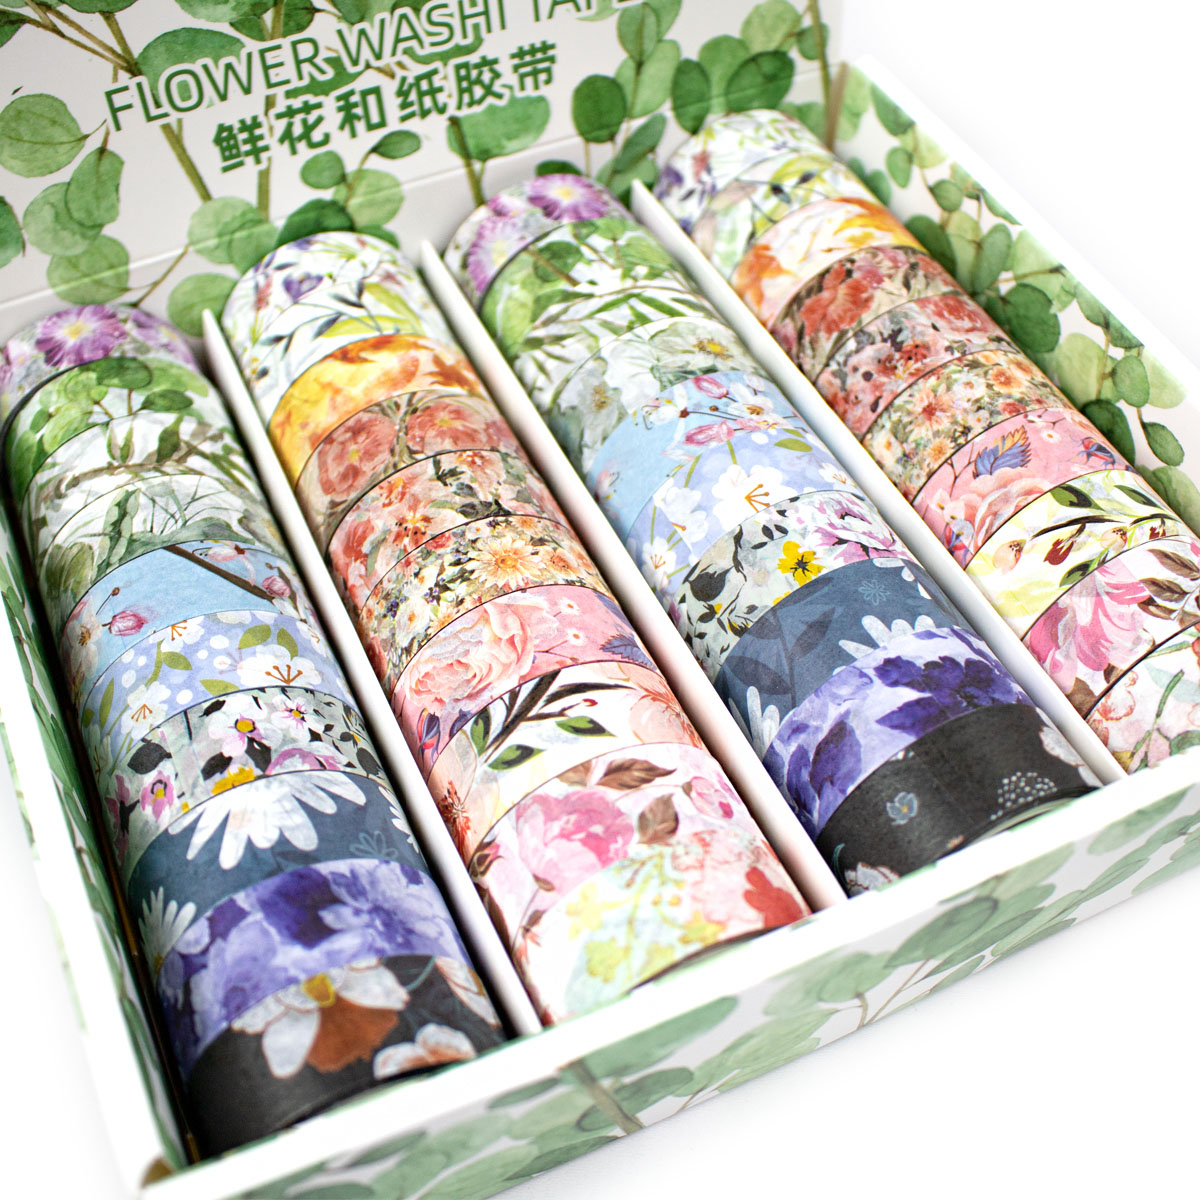 Washi Tape Redondo (Cinta Adhesiva con diseño) Diseños Florales